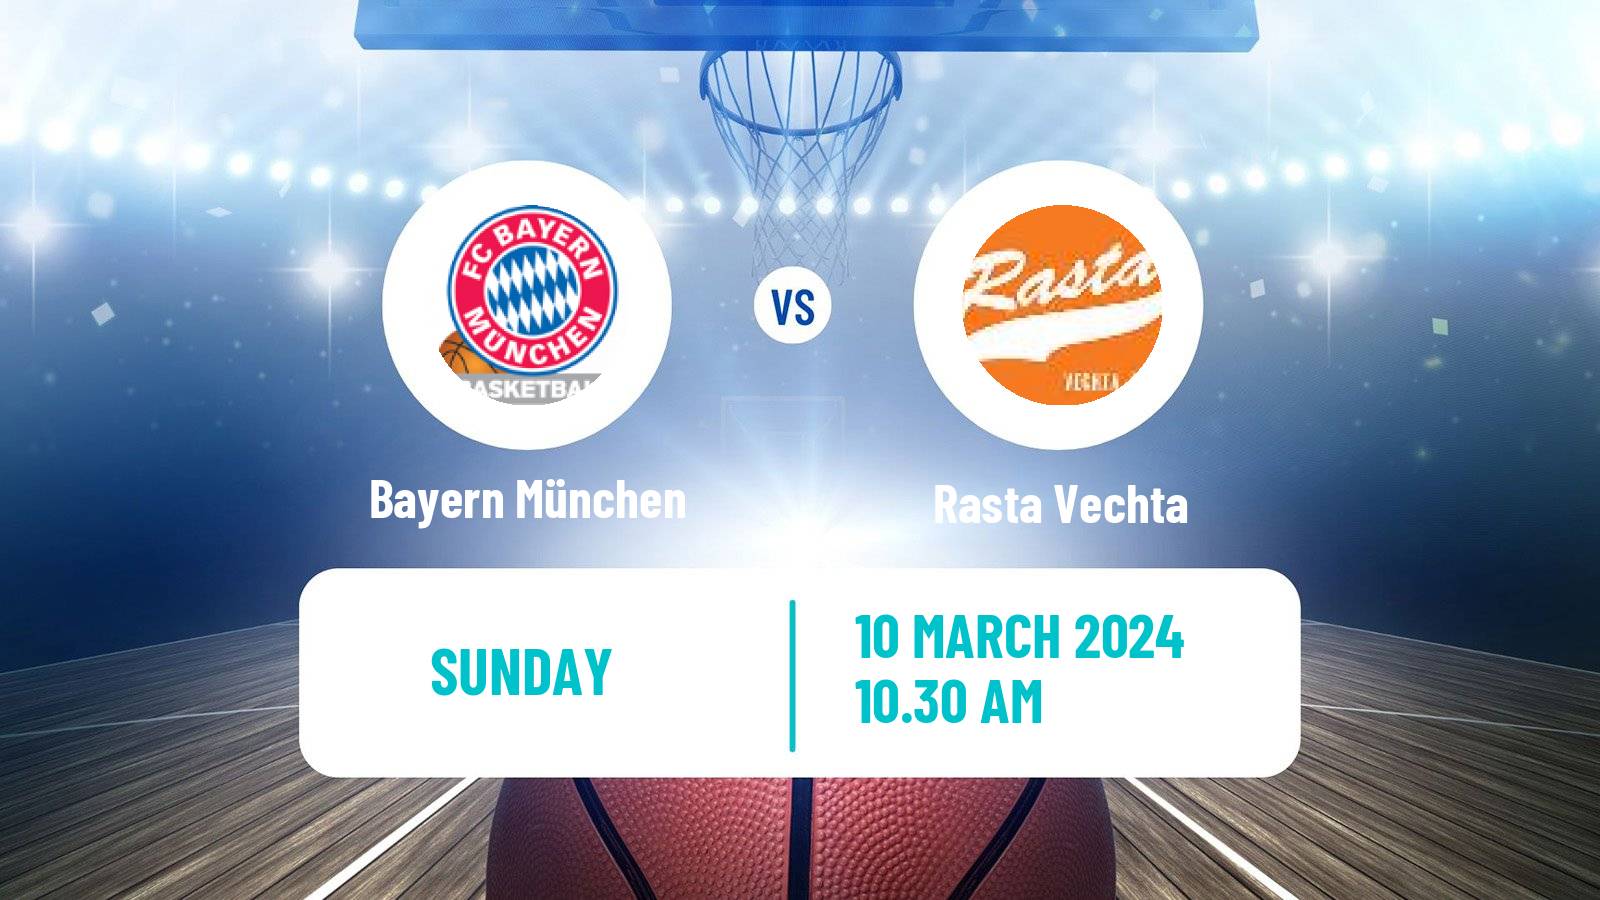 Basketball German BBL Bayern München - Rasta Vechta